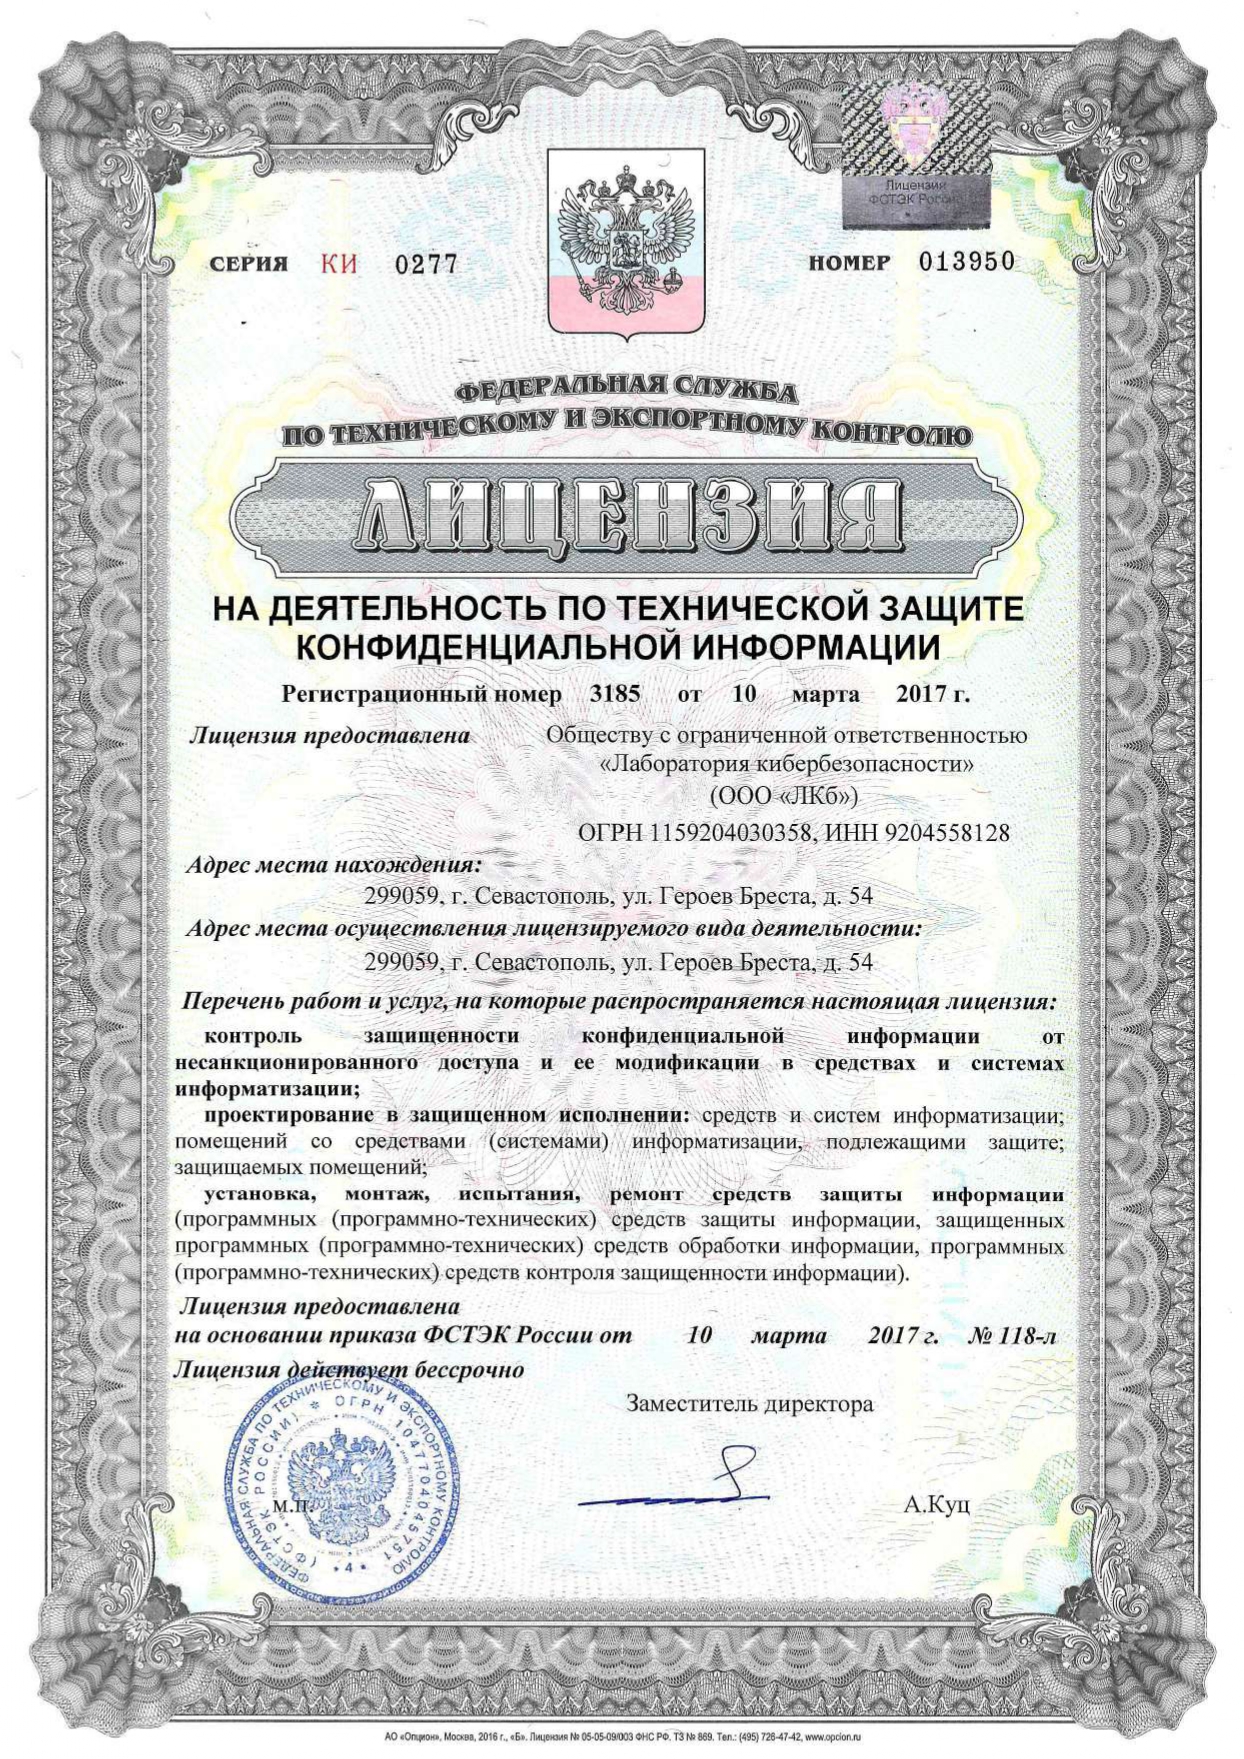 Лаборатория кибербезопасности является обладателем лицензии ФСТЭК России на деятельность по технической защите конфиденциальной информации № 3185 от 10.03.2017